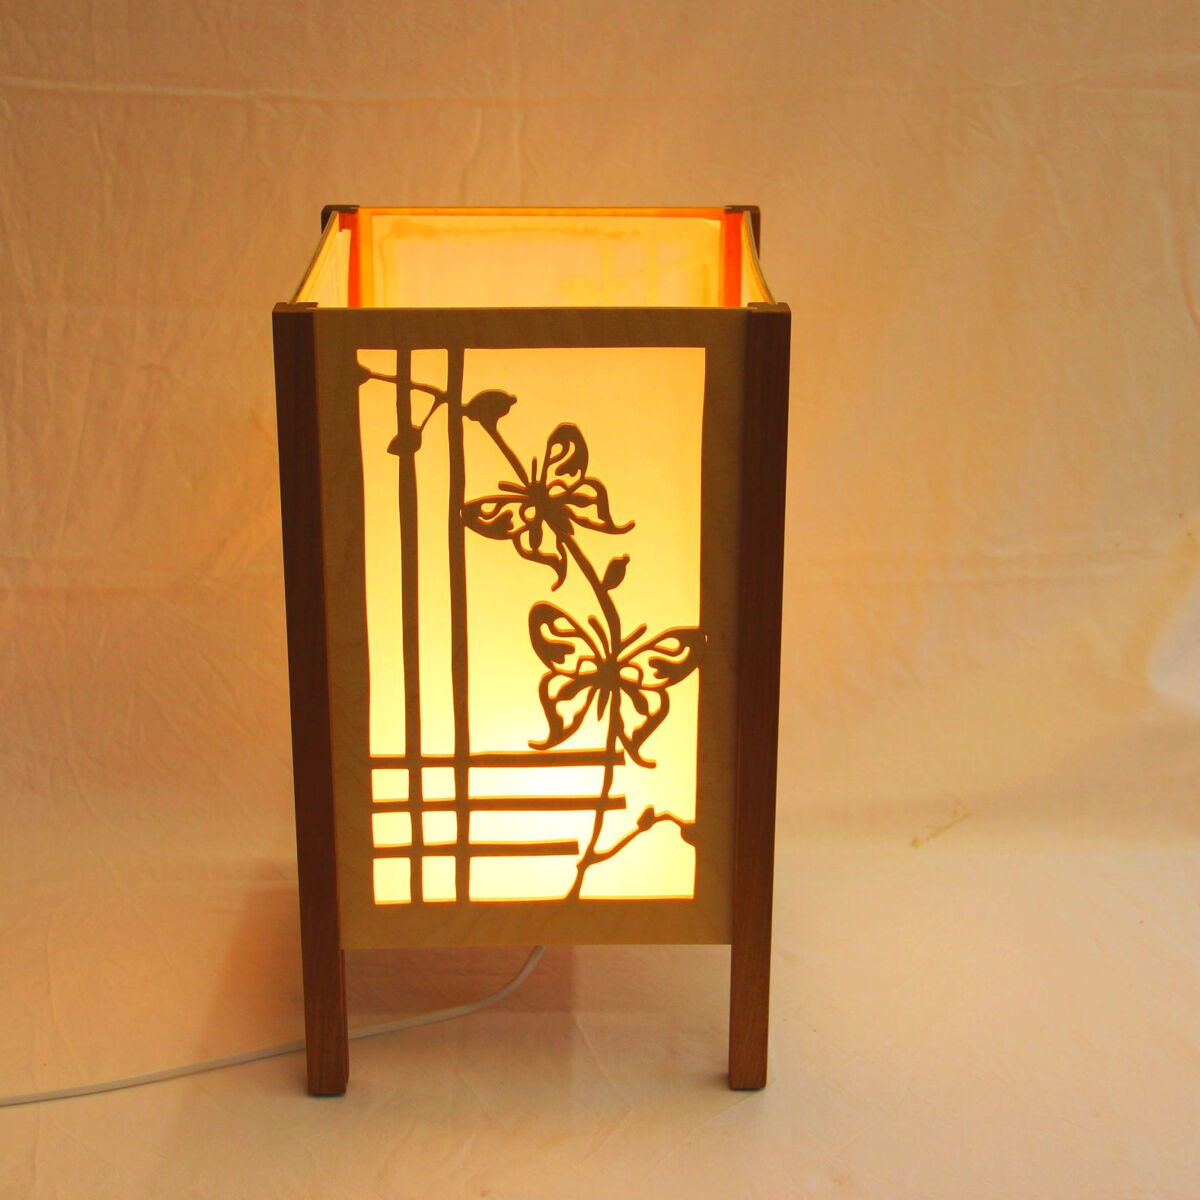 Lampe mit Schmetterlingmuster aus Holz